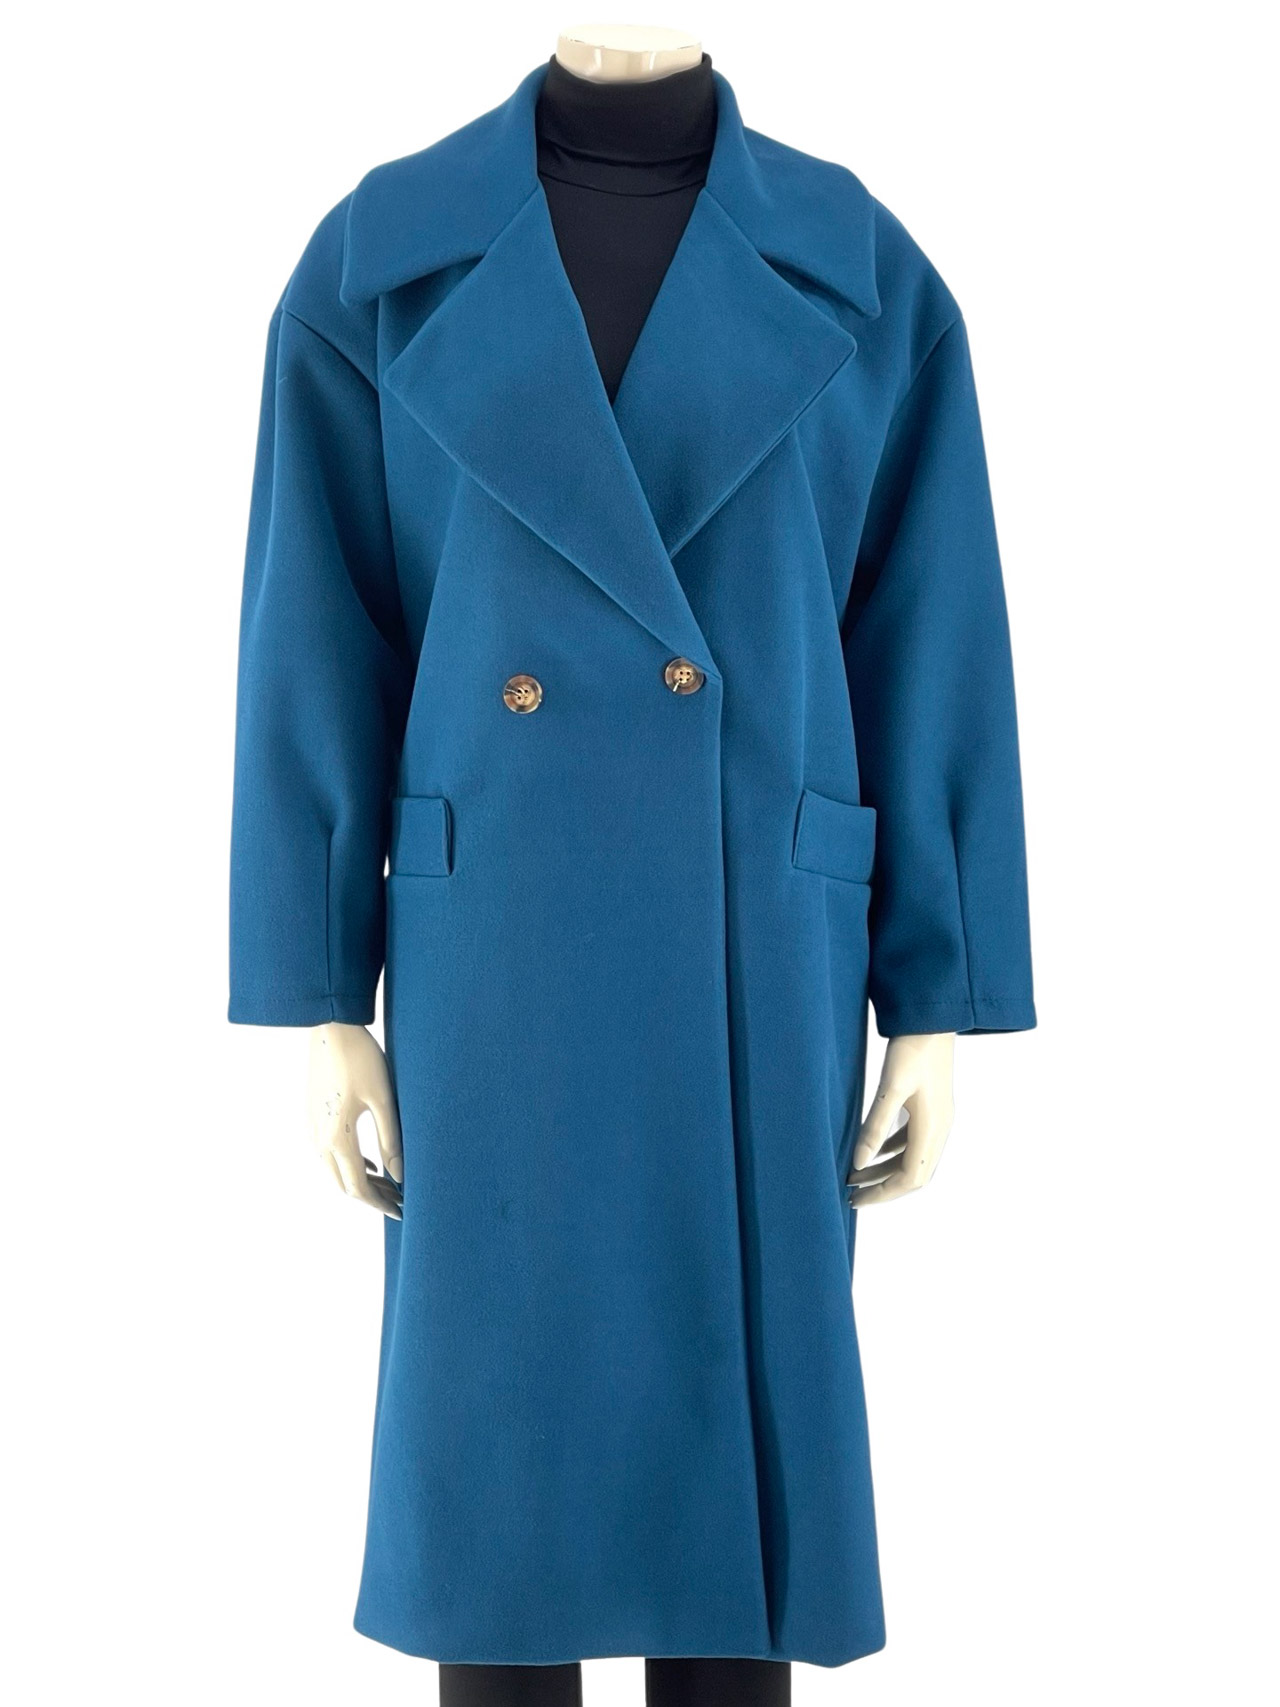 Παλτό γυναικείο με πέτο γιακά midi κωδ. 10820 μπροστινή όψη- πετρόλ